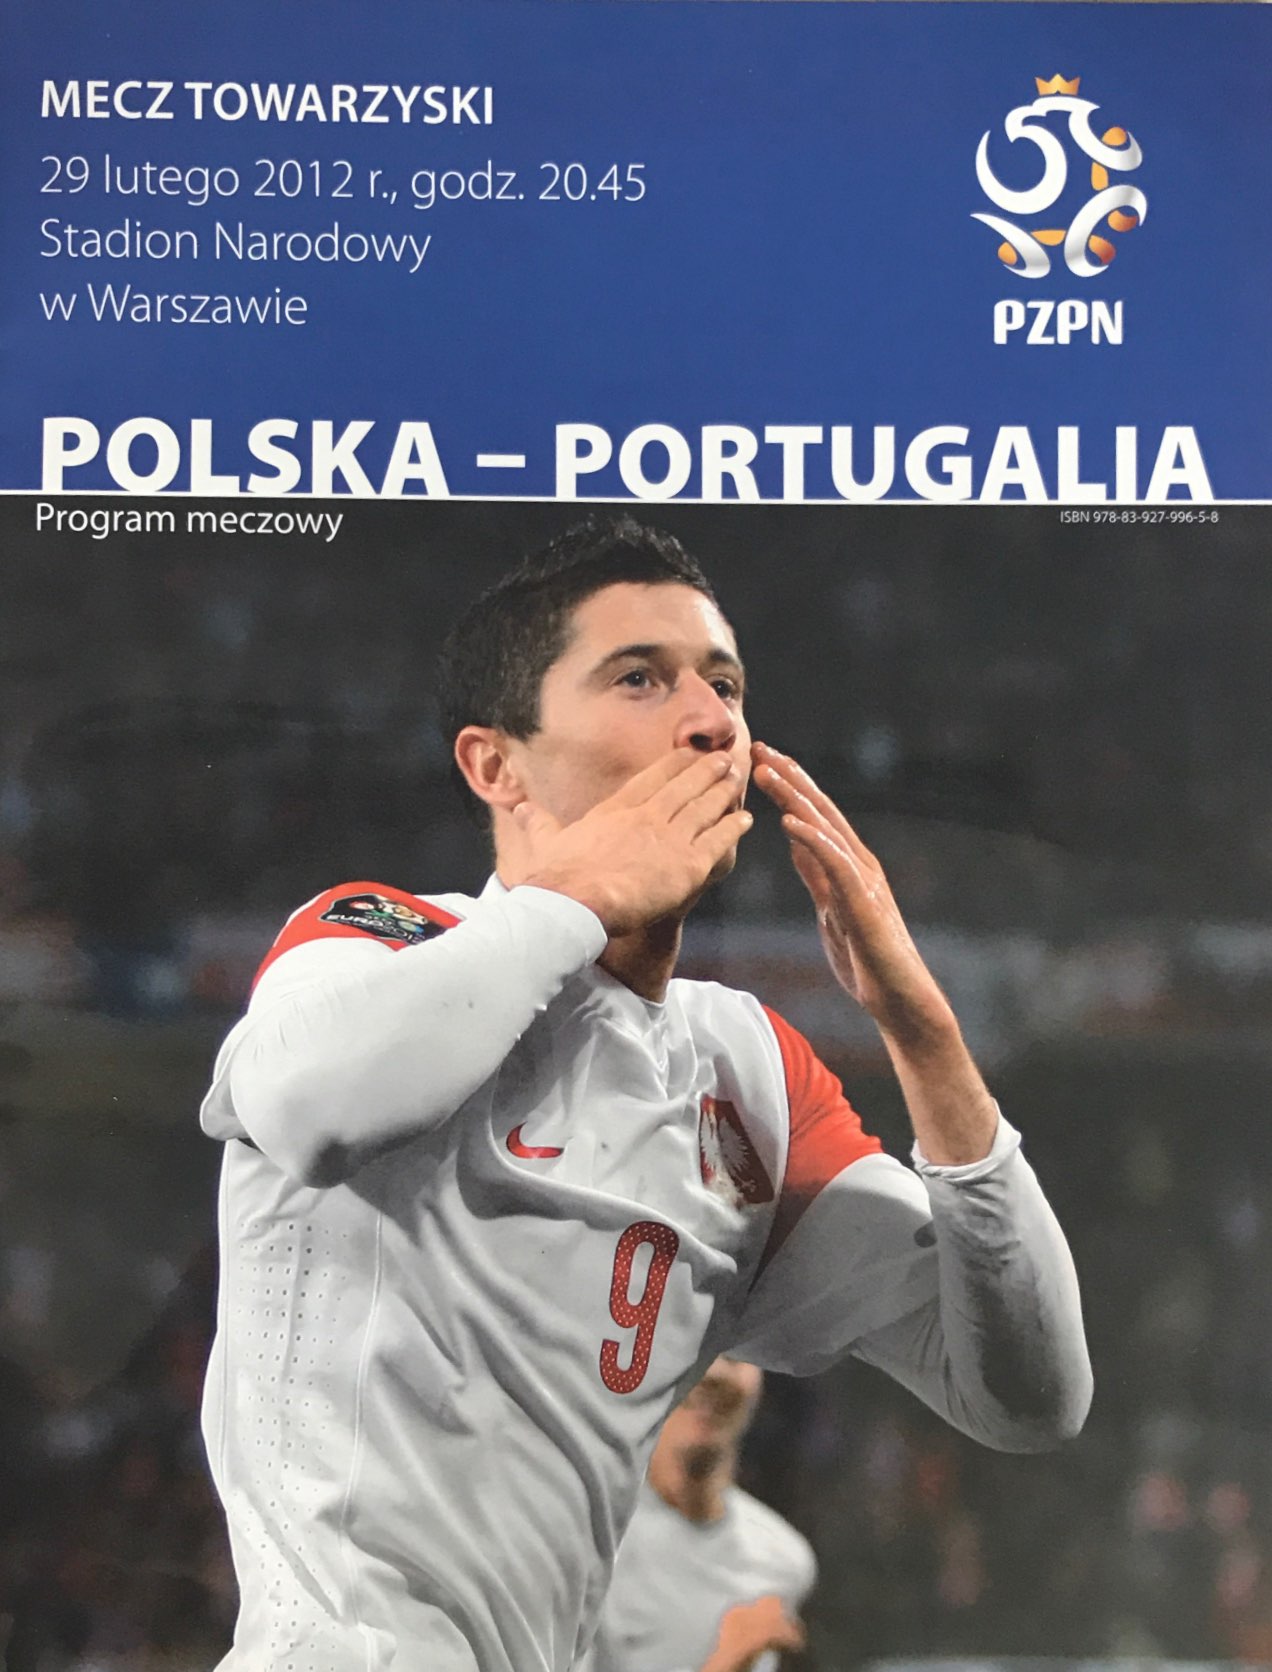 Program meczowy Polska - Portugalia 0:0 (29.02.2012).